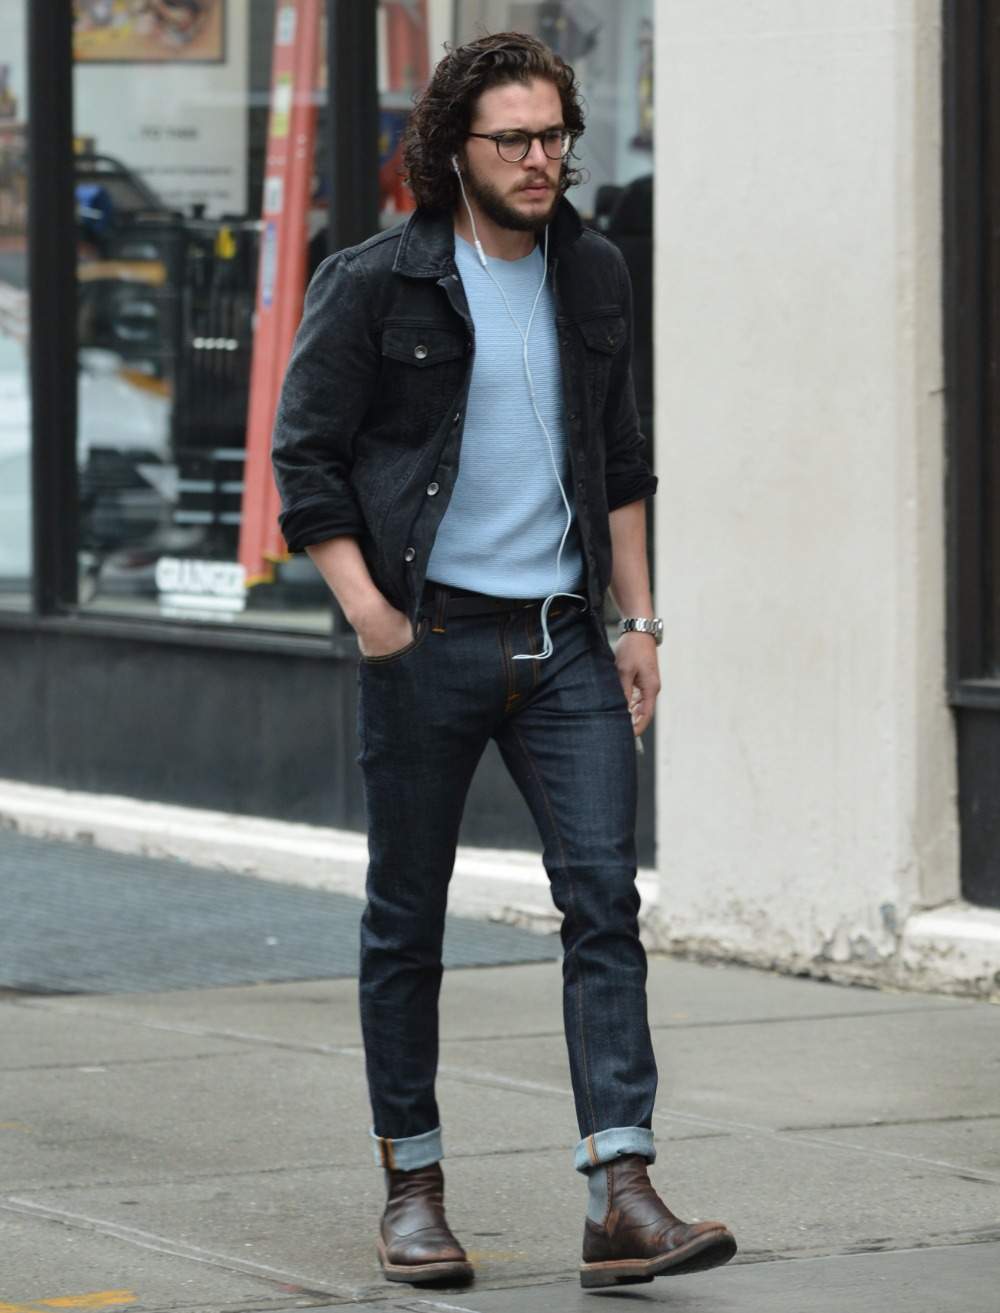 Jaqueta jeans preta masculina combinada com suéteres e botas